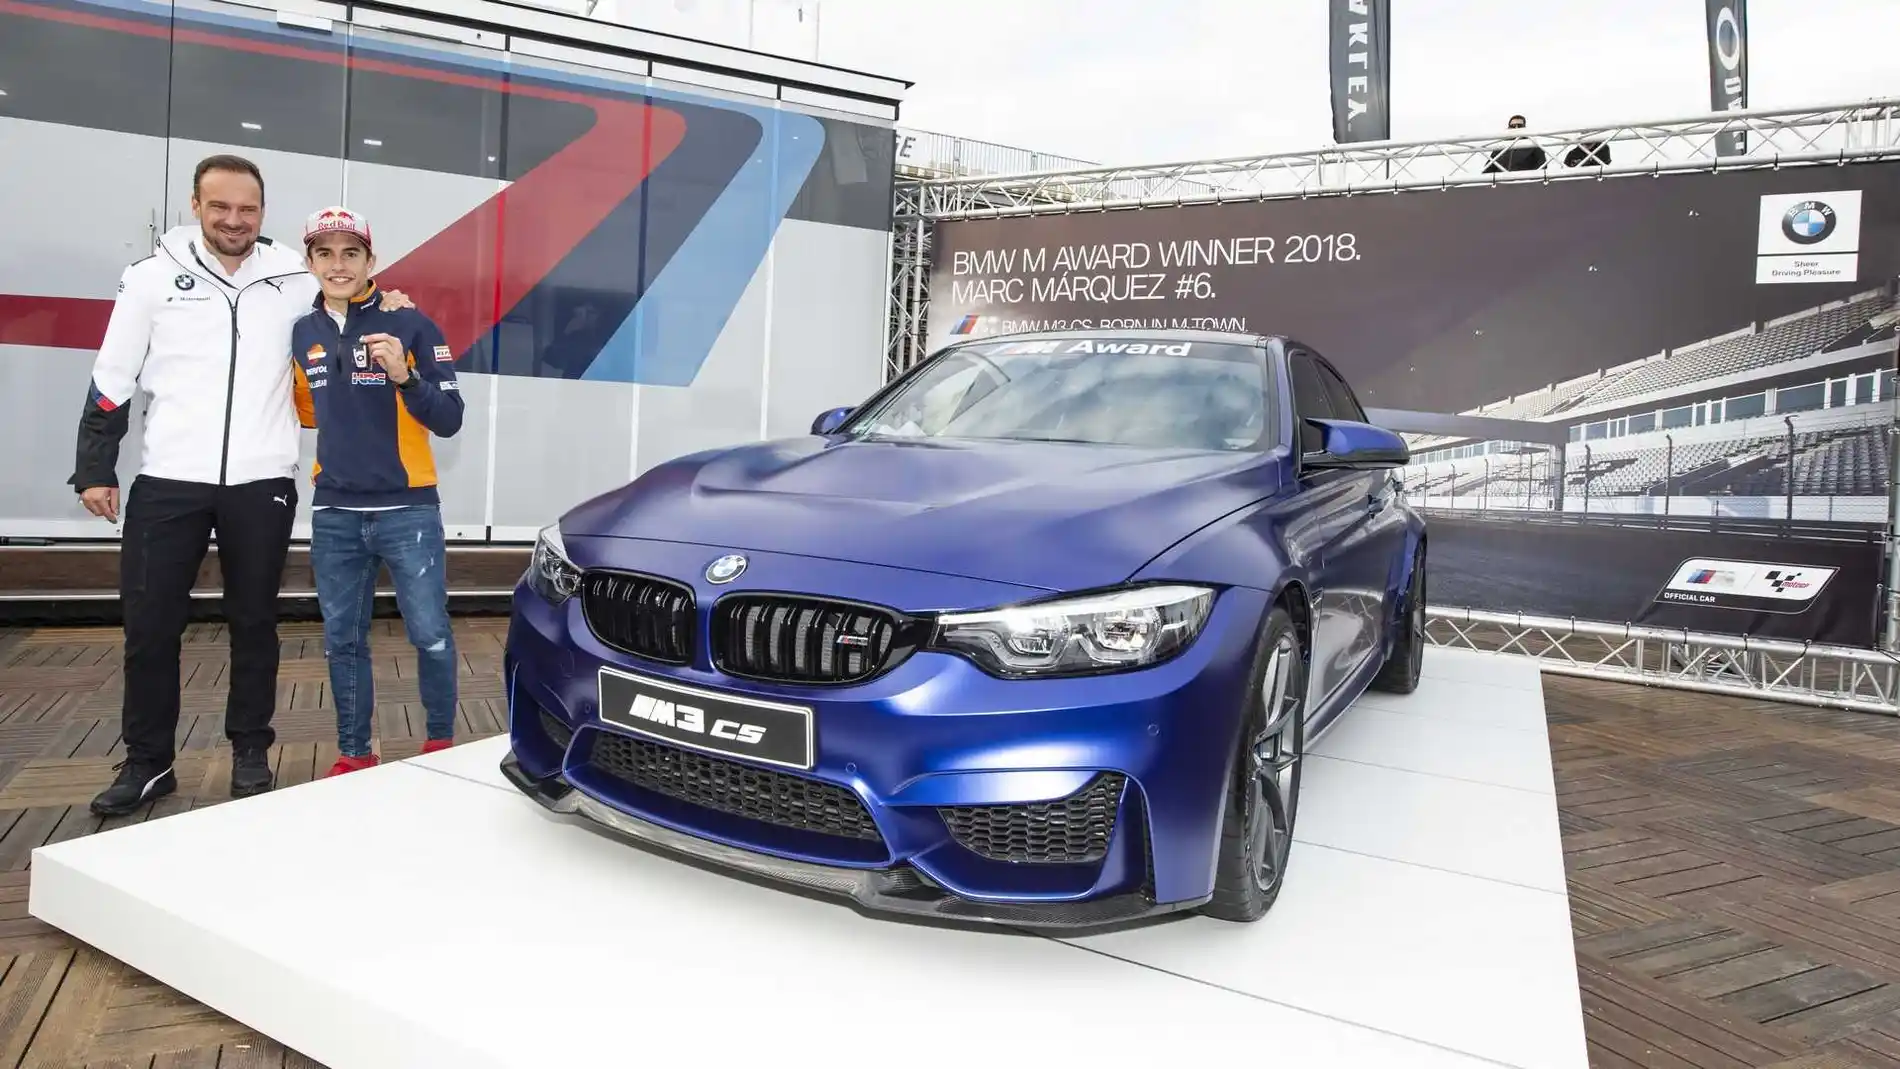 Marc Márquez con su nuevo BMW M3 